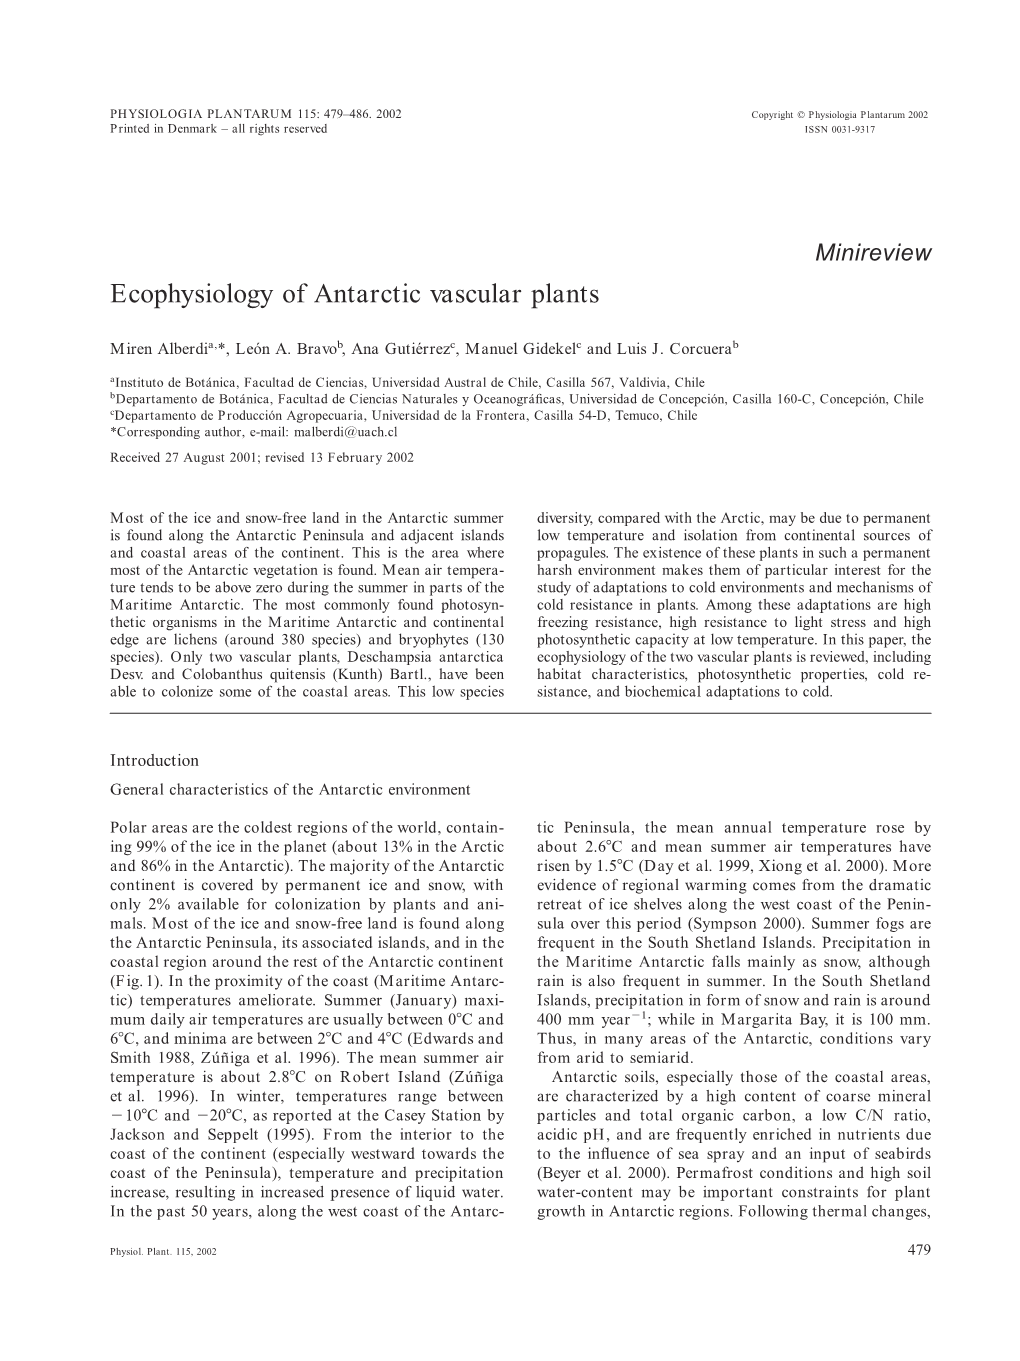 Ecophysiology of Antarctic Vascular Plants